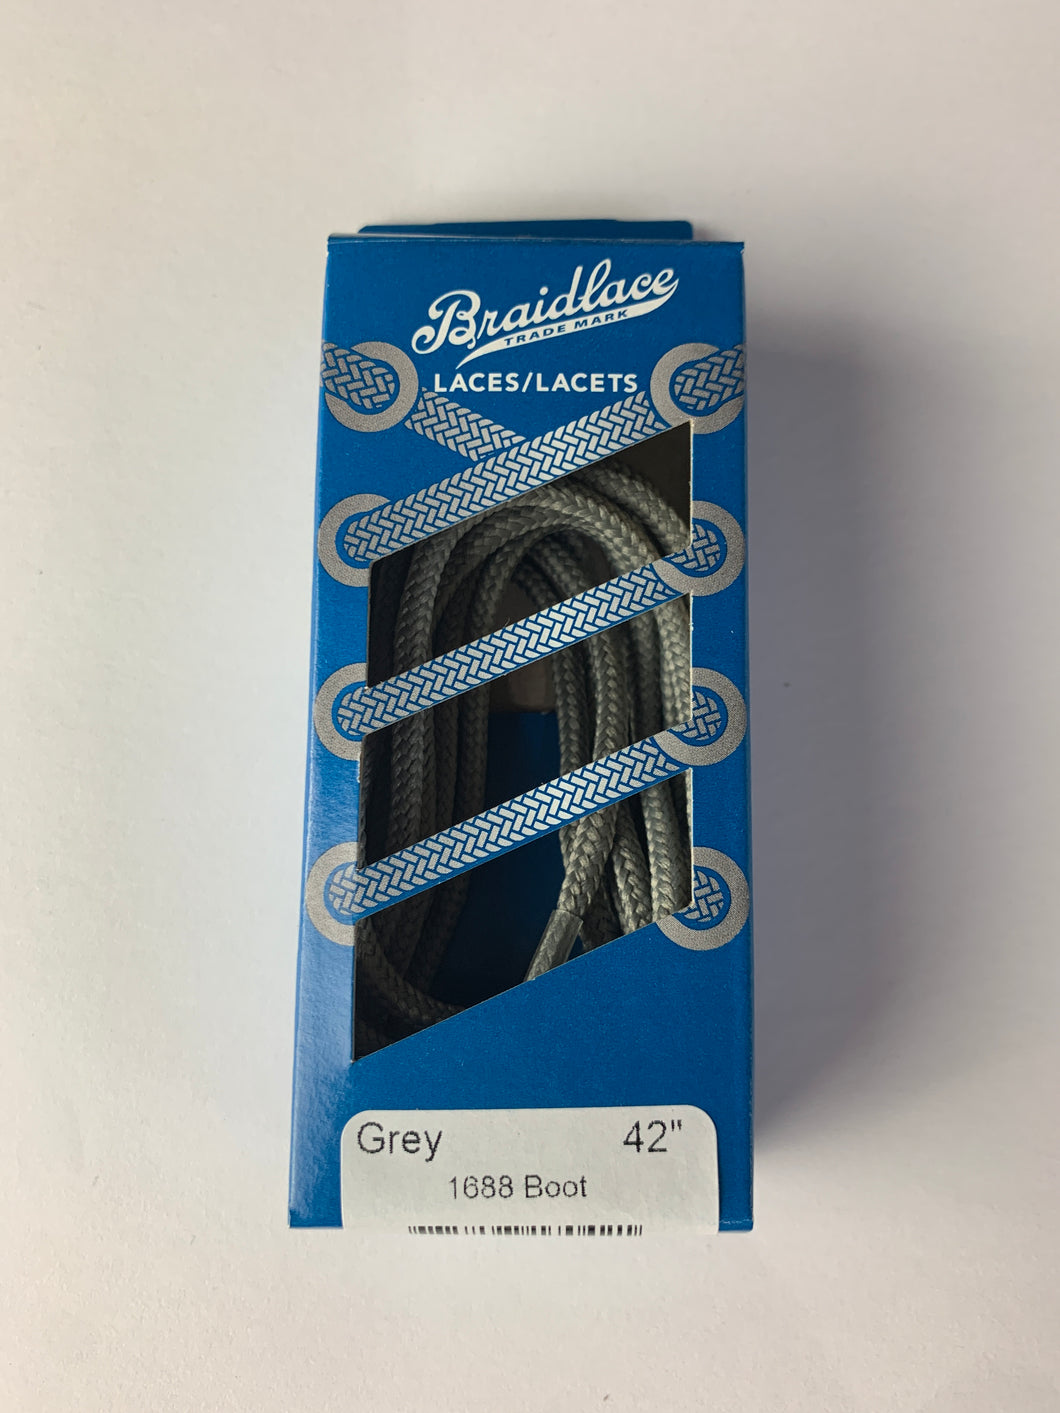 Grey think laces Braidlace 42